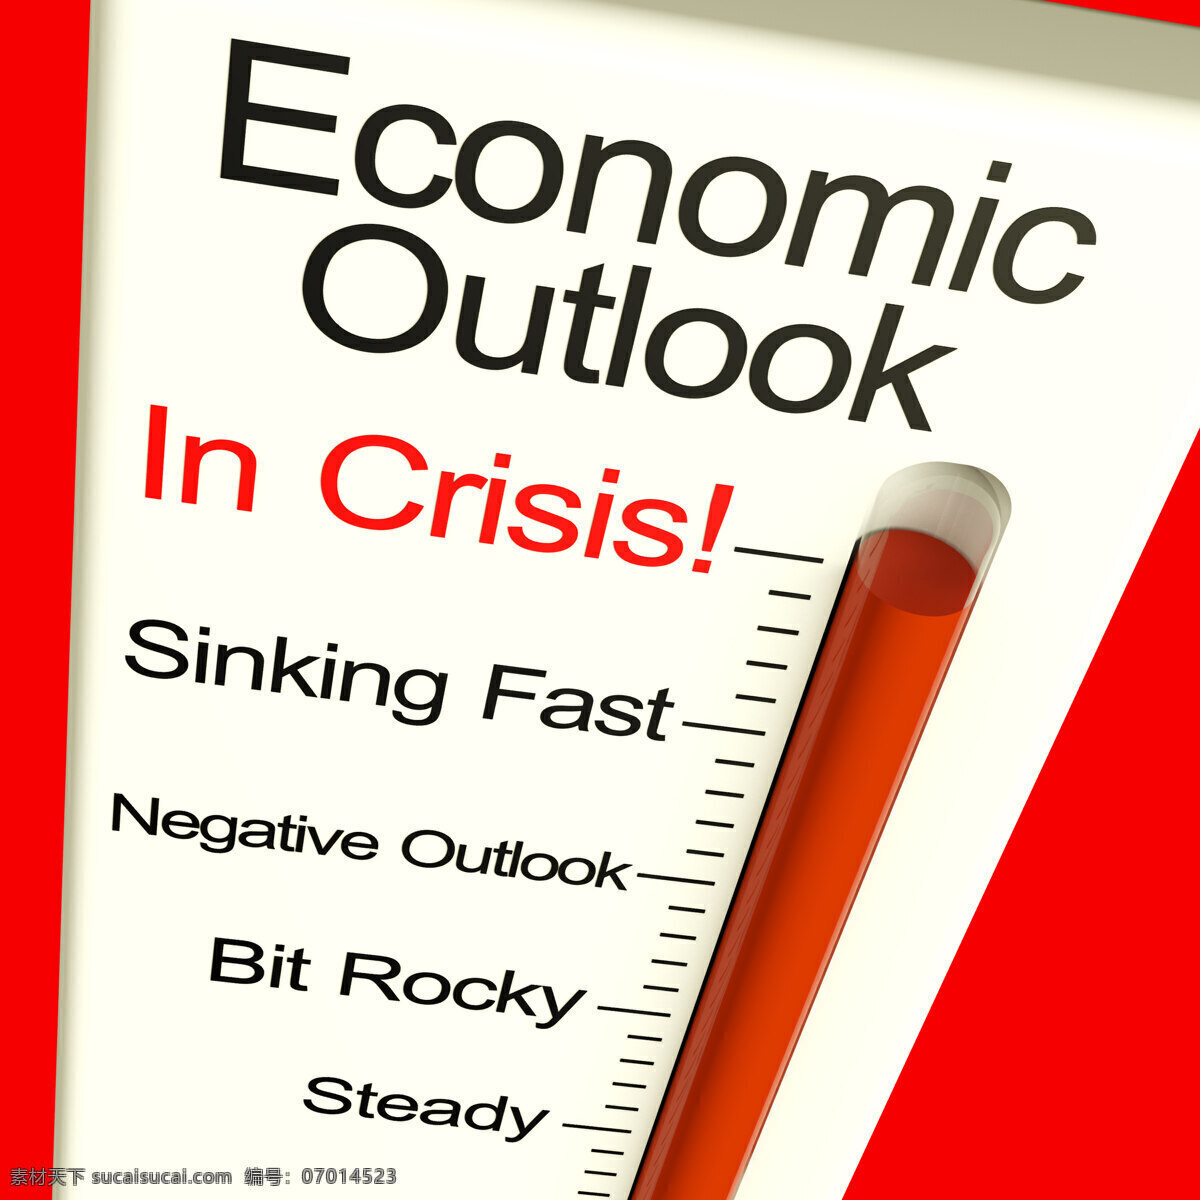 危机 萧条 经济 前景 显示器 显示 破产 商务金融